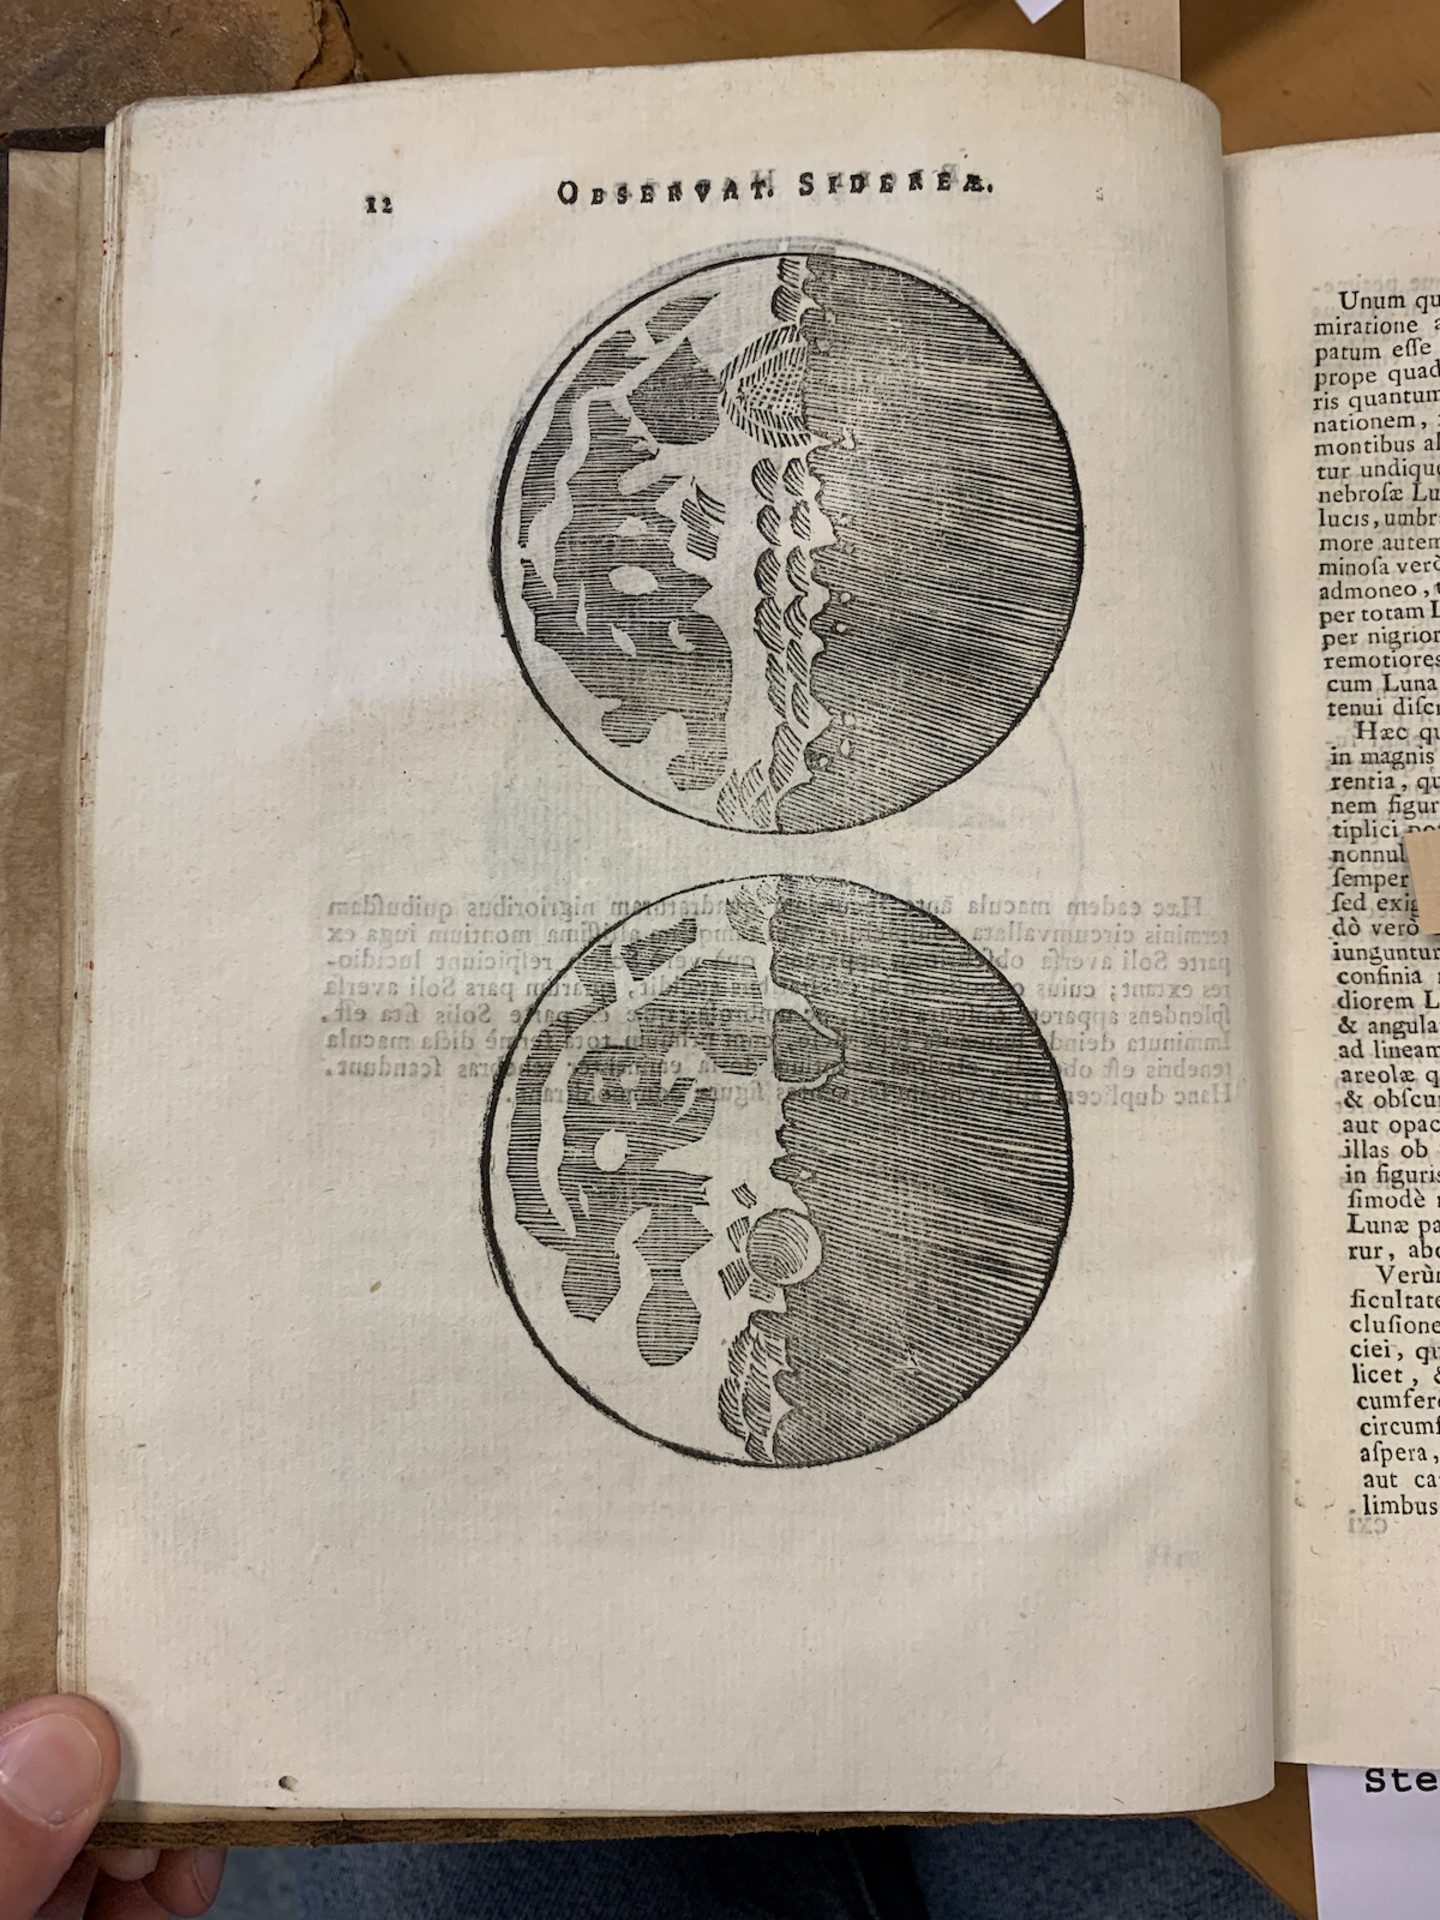 <b>Darstellungen der Mondoberfläche, aus: Galileo Galilei, Sidereus nuncius, in: Opere Bd. 2, 1718</b></br>Gymnasialbibliothek, N1/95-2 | Bildnachweis: Universitäts- und Stadtbibliothek Köln